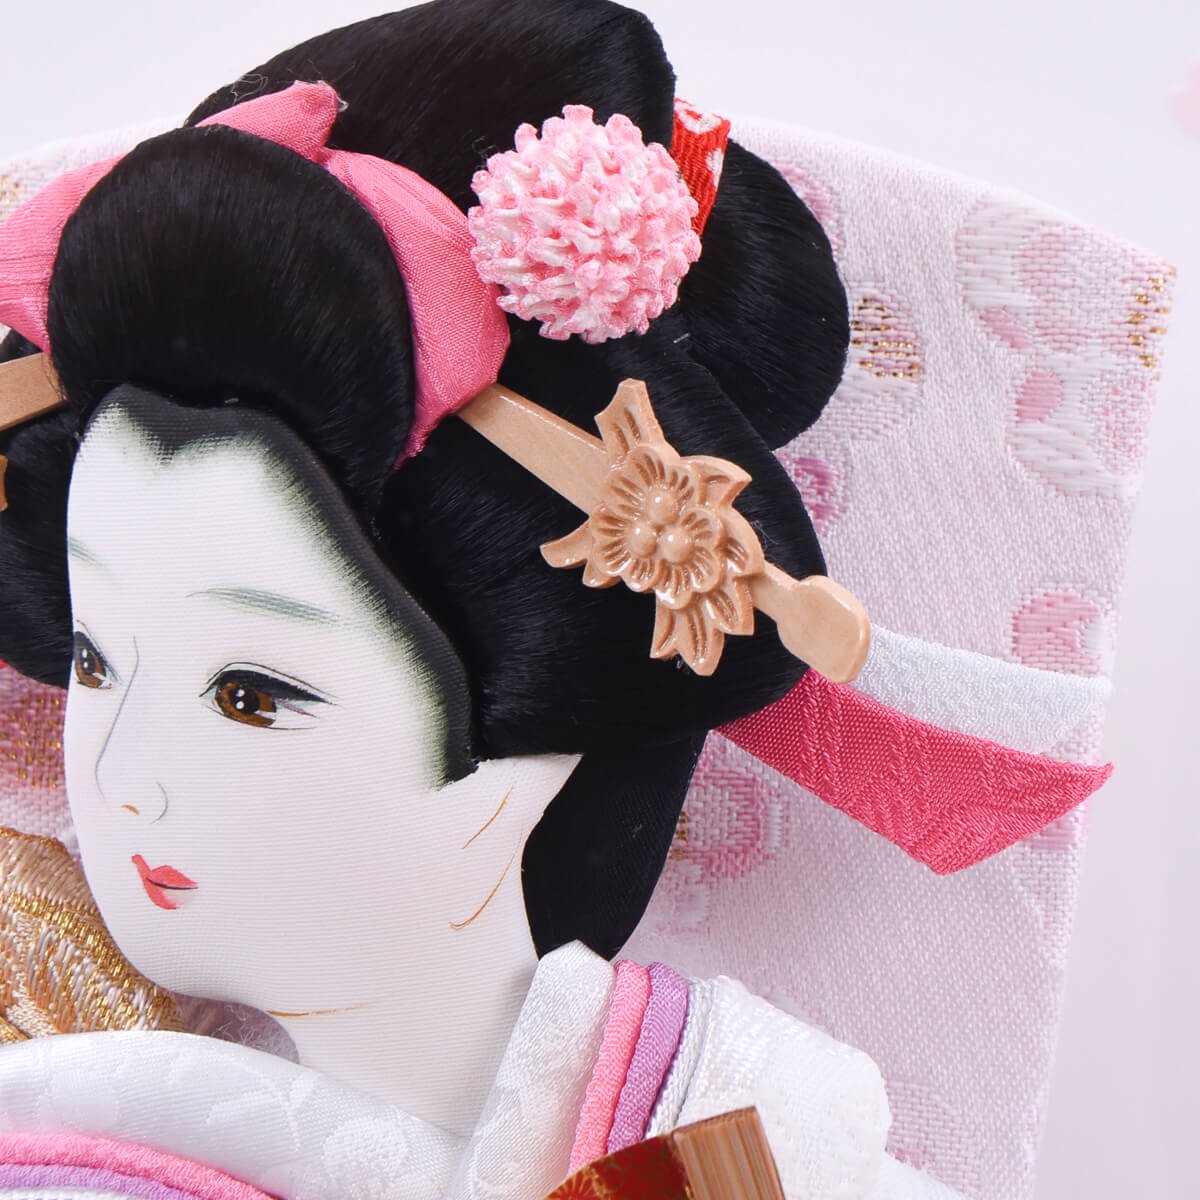 羽子板 舞桜 10号 アクリル 可愛い ピンク羽子板 - 雛人形・五月人形